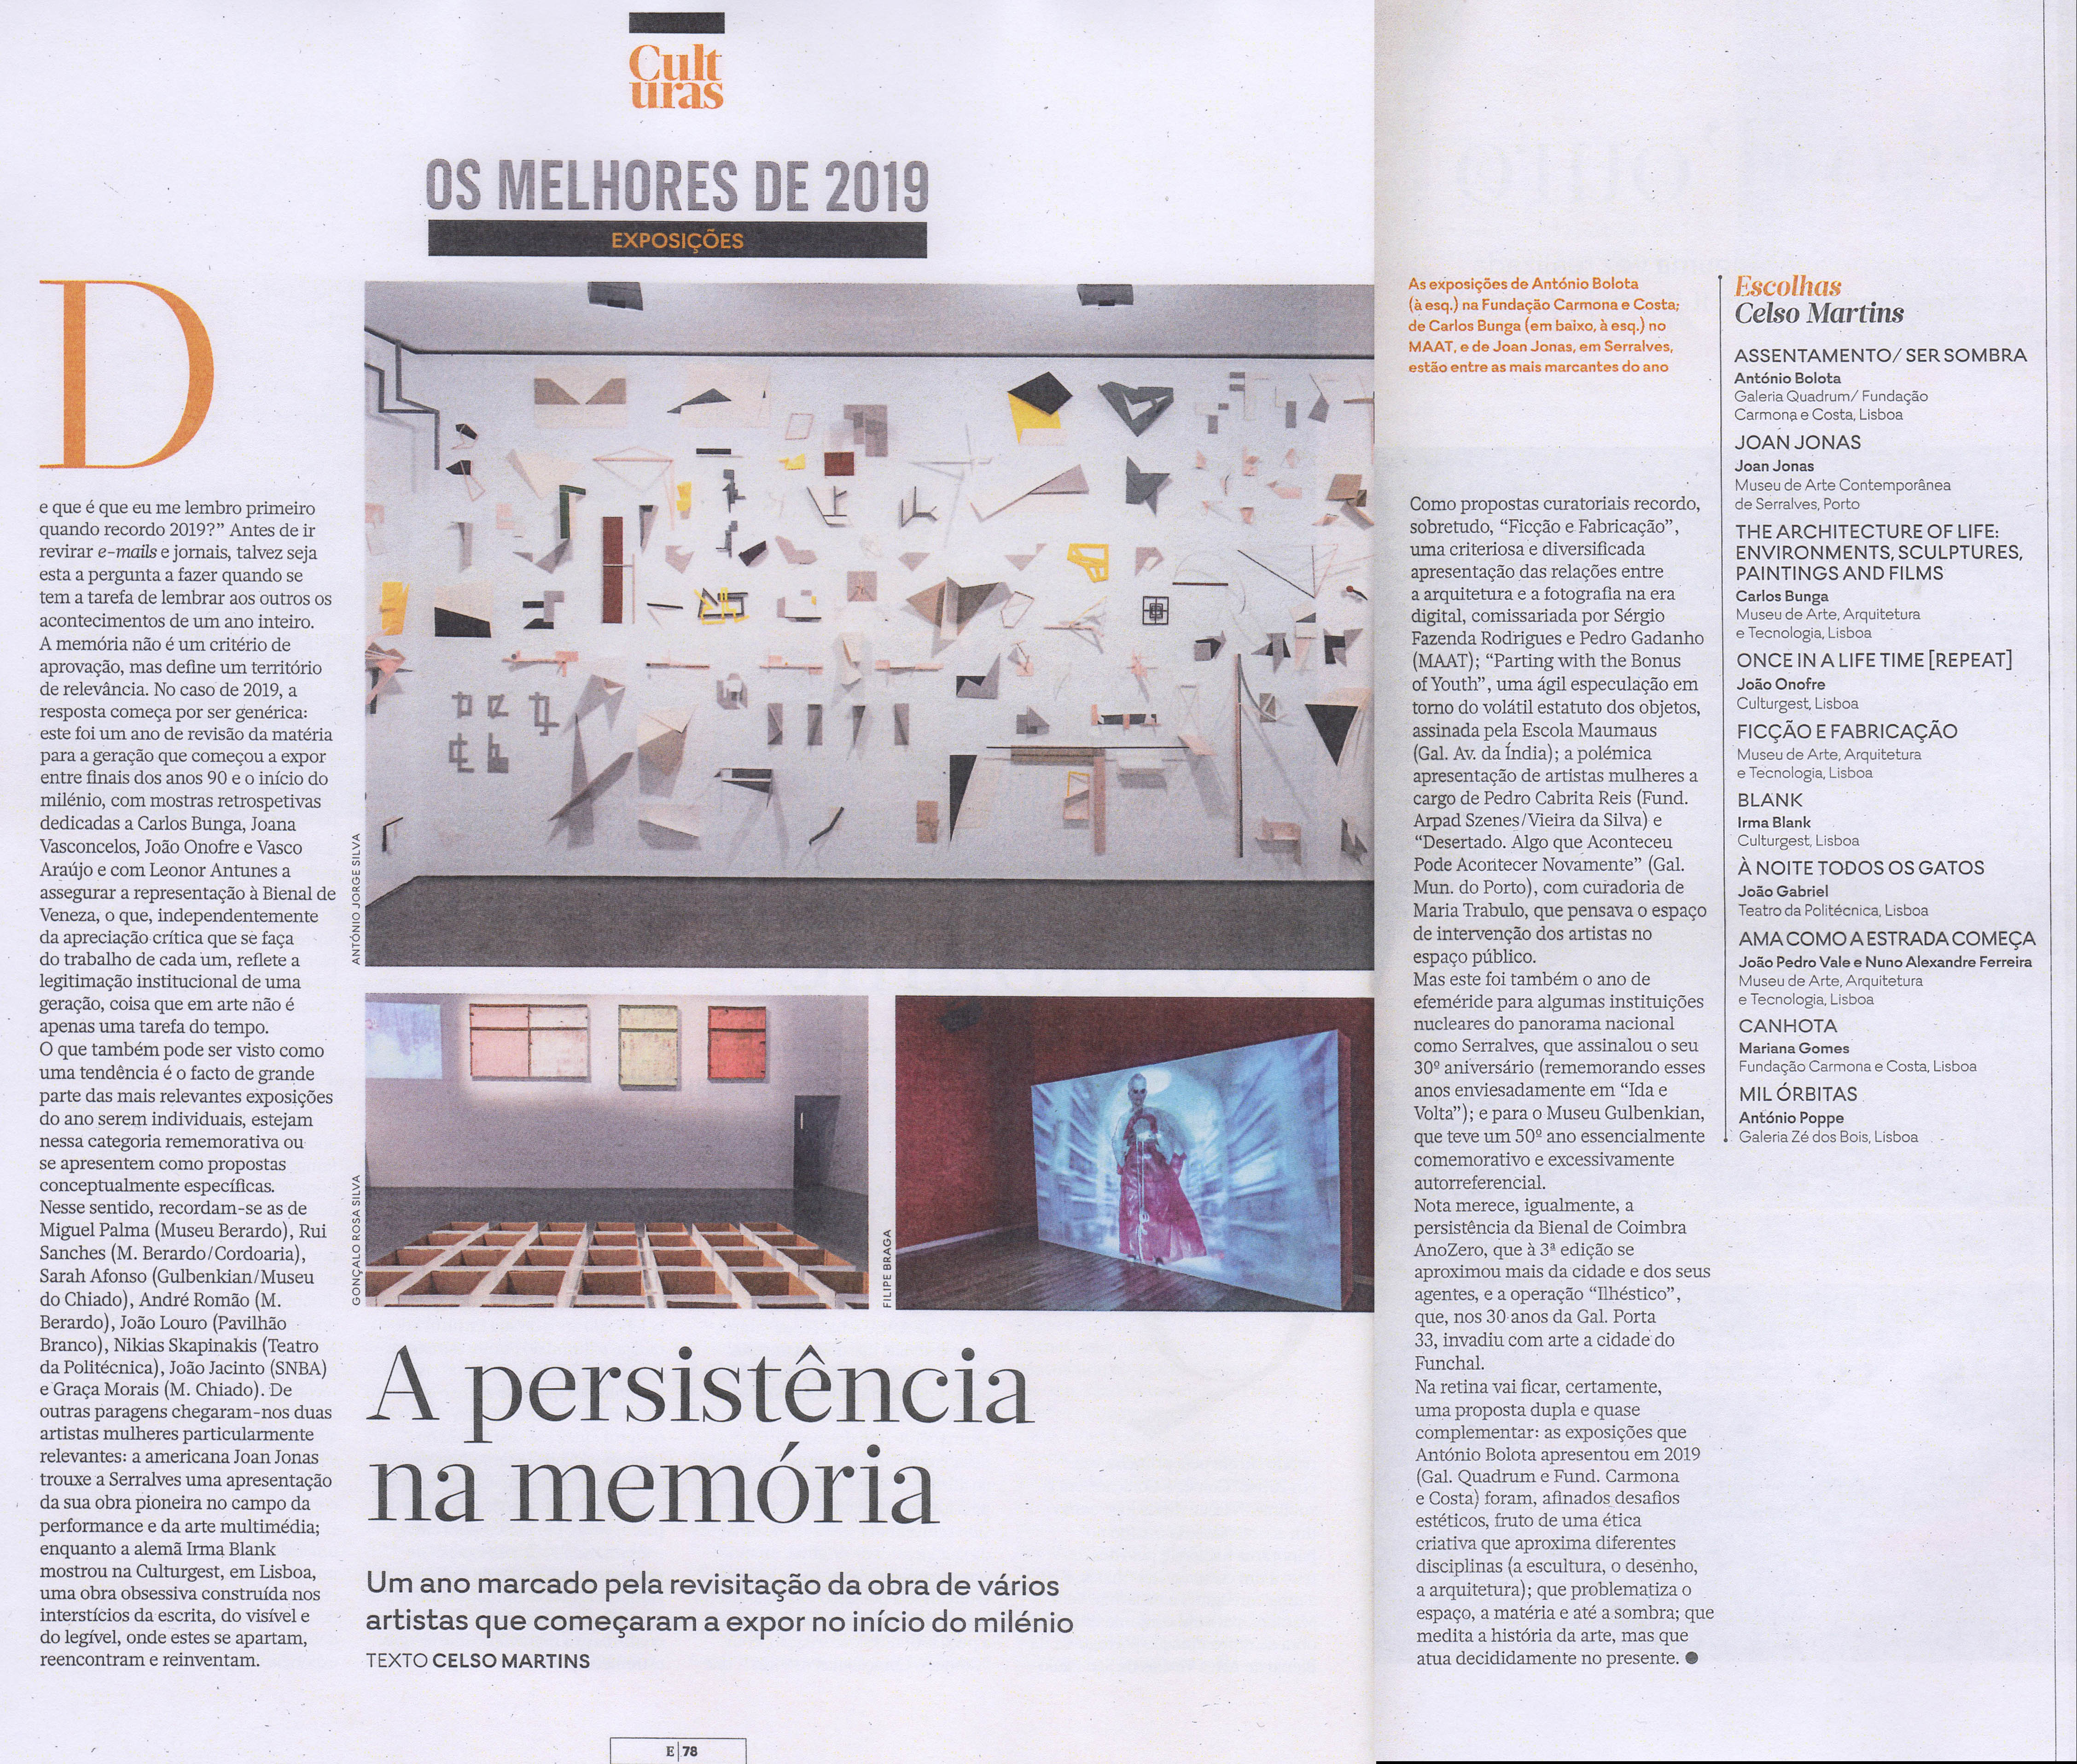 Expresso, Revista E |
21.12.2019 | Celso Martins